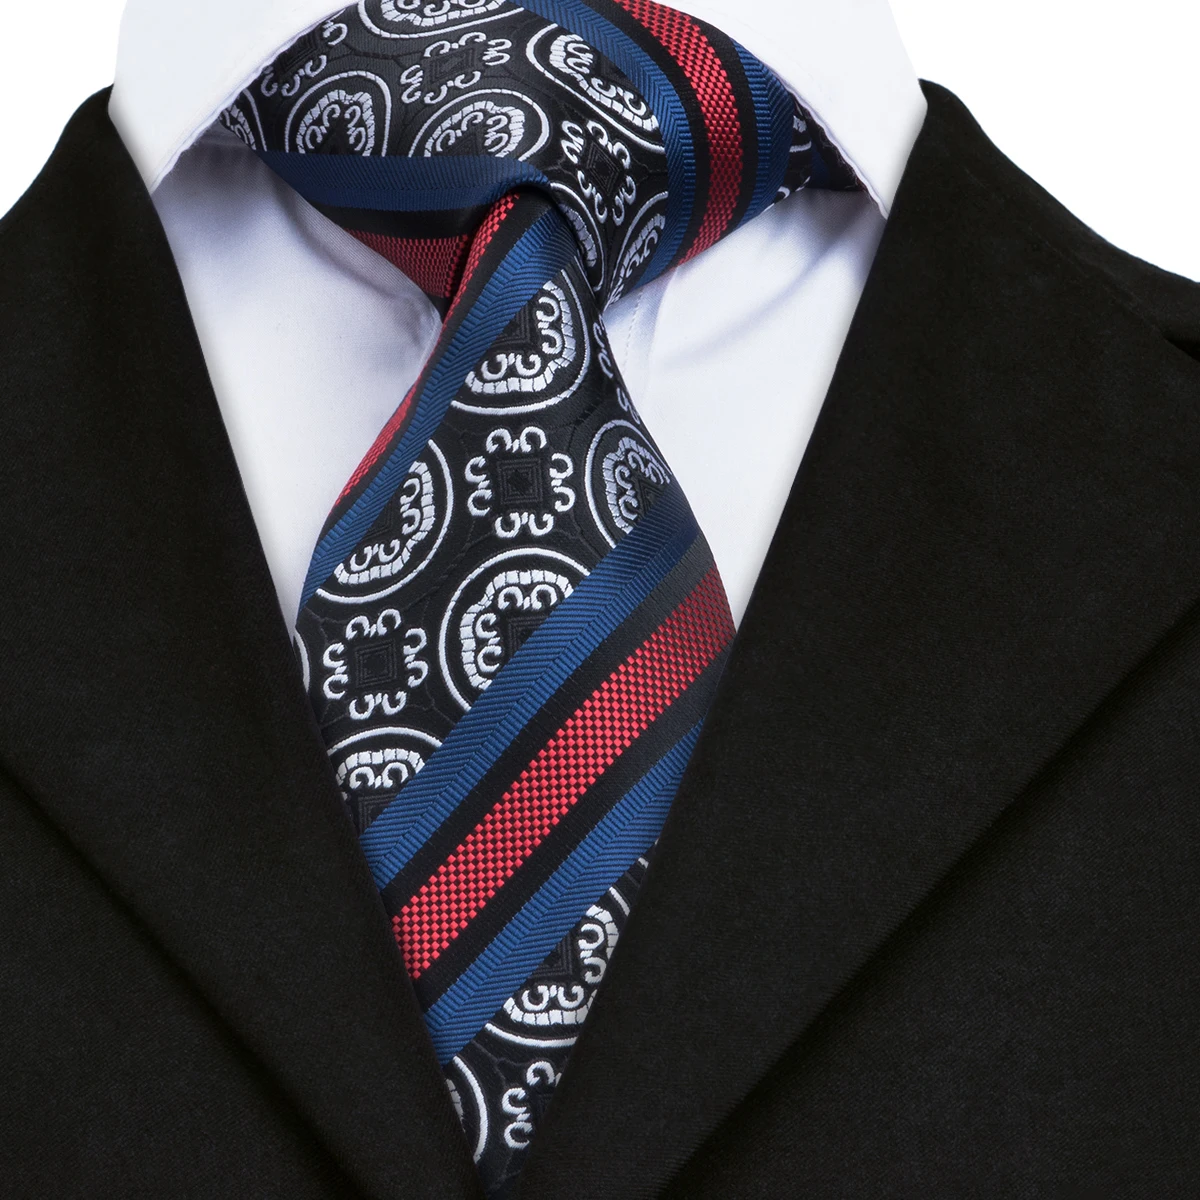 Картинка галстук мужской. Henderson галстук аскот. Галстук мужской. Мужчина в галстуке. Современный галстук мужской.